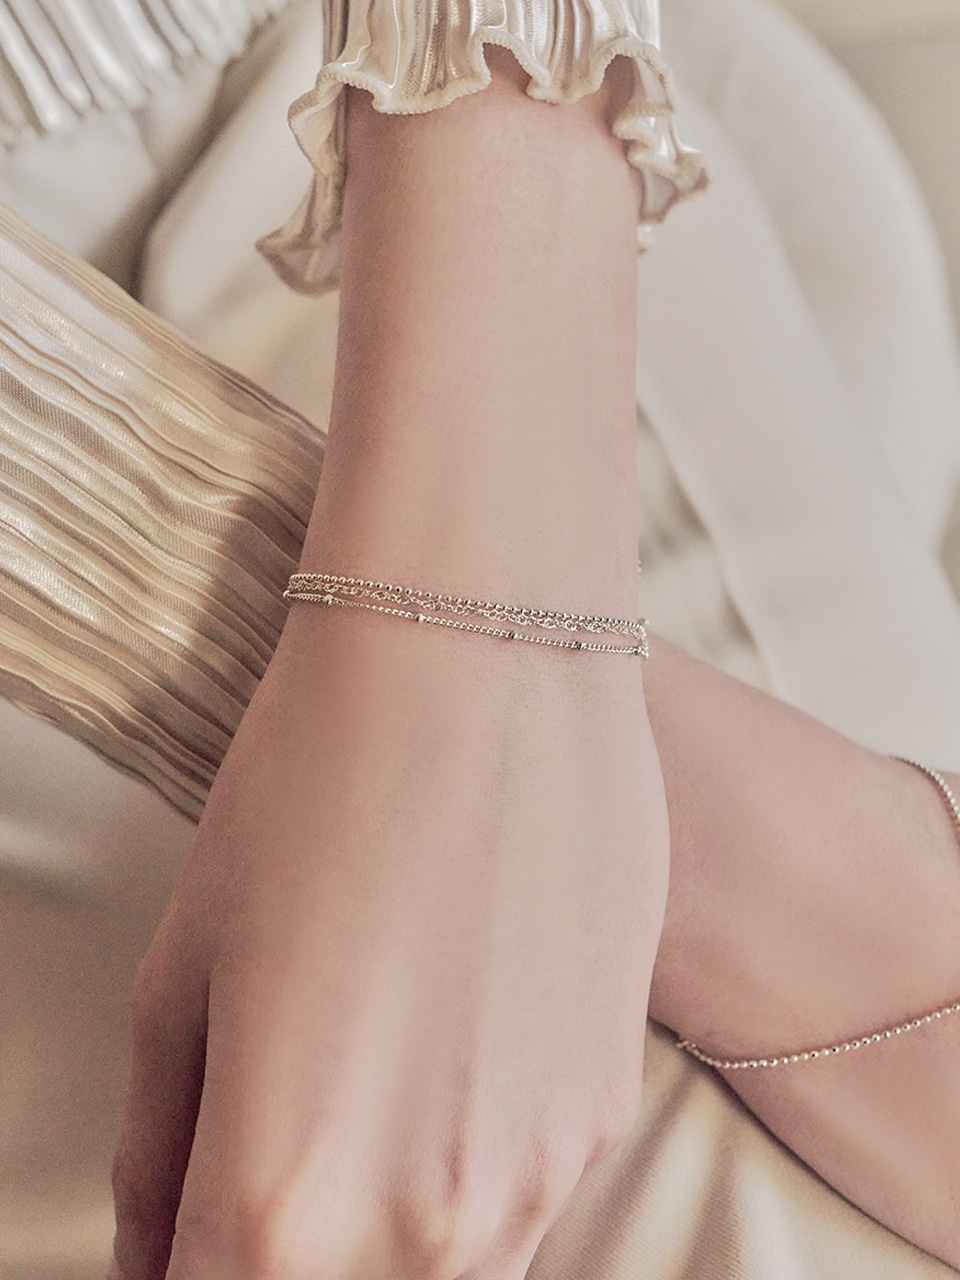 etoile layered bracelet